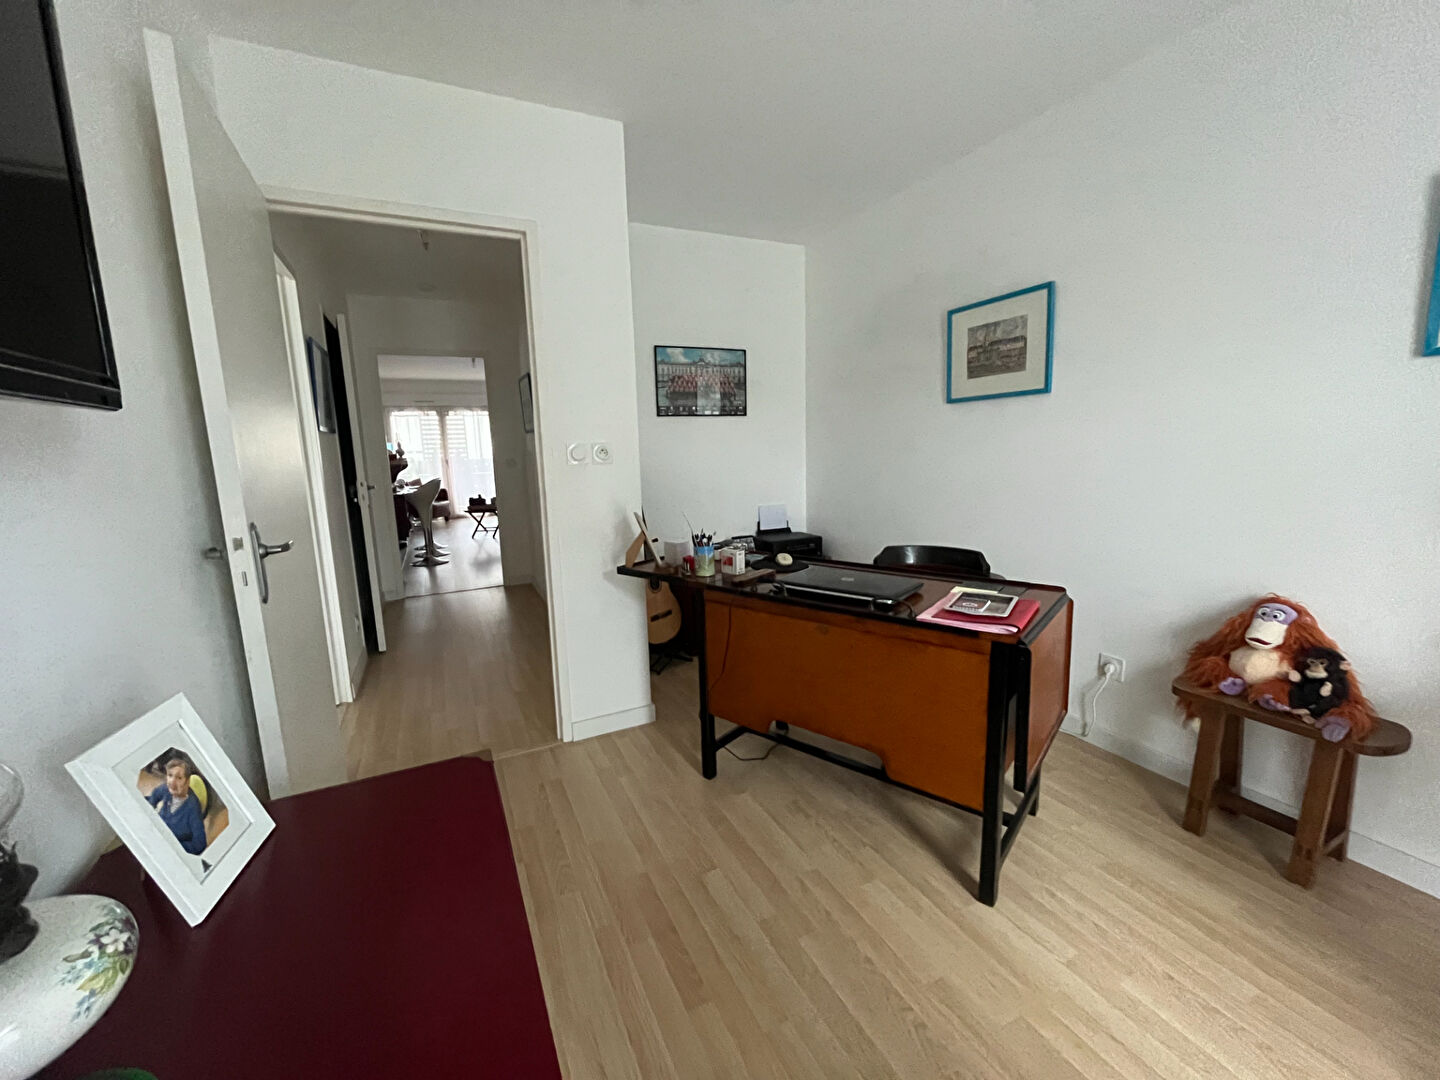 Appartement 3 pièces - 63 m² environ - 54431913i.jpg | Kermarrec Habitation